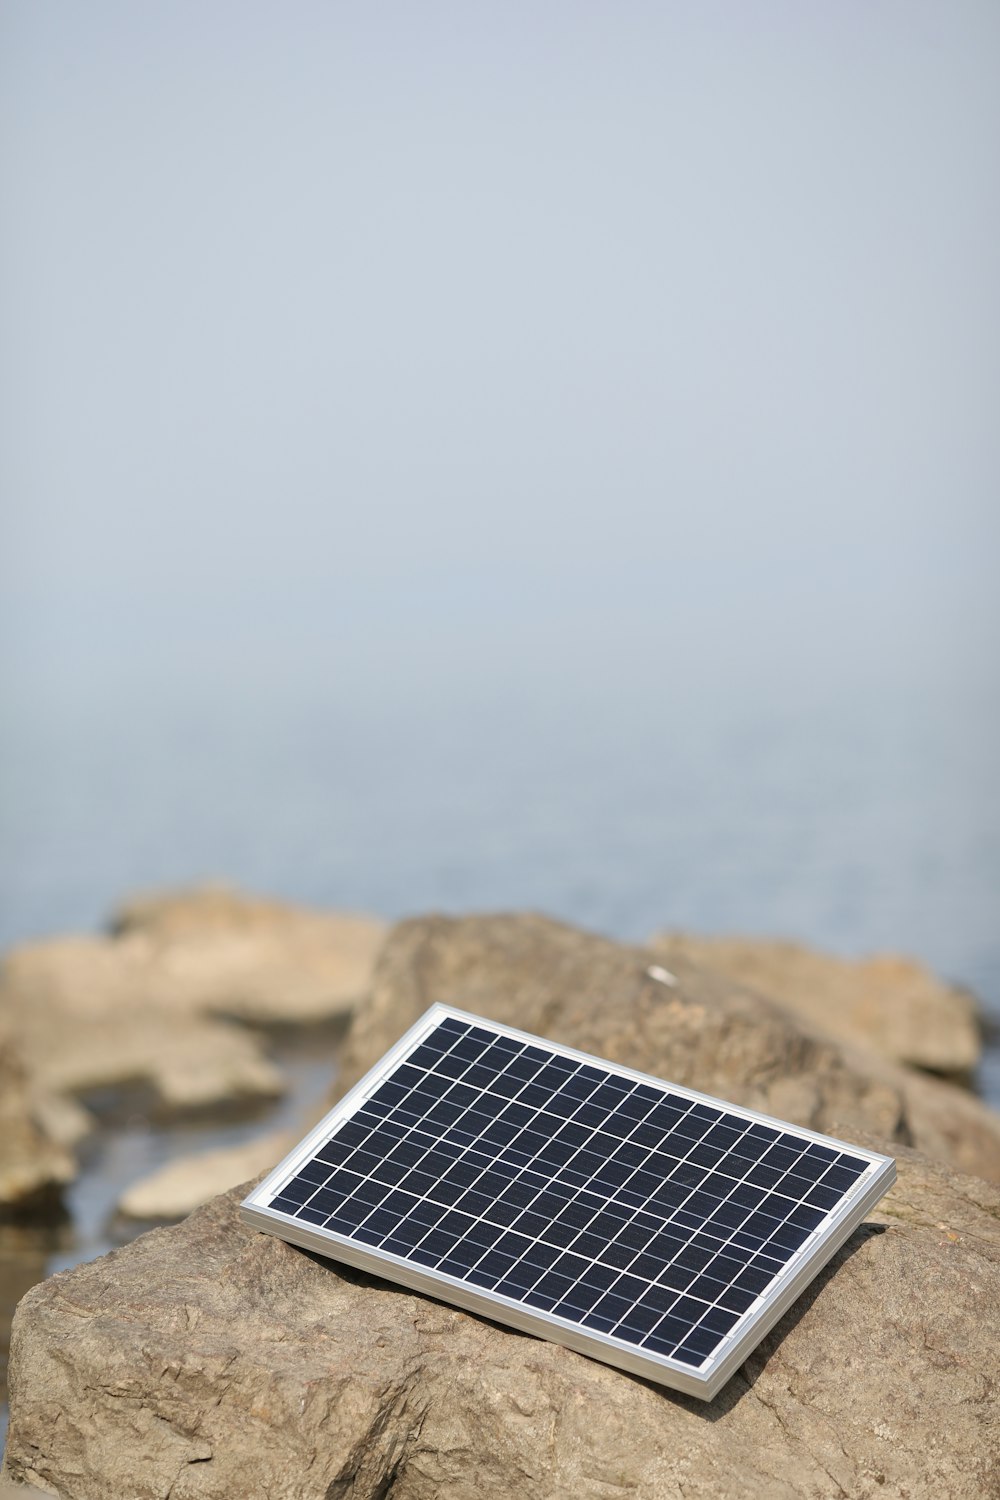 a solar panel on a rock